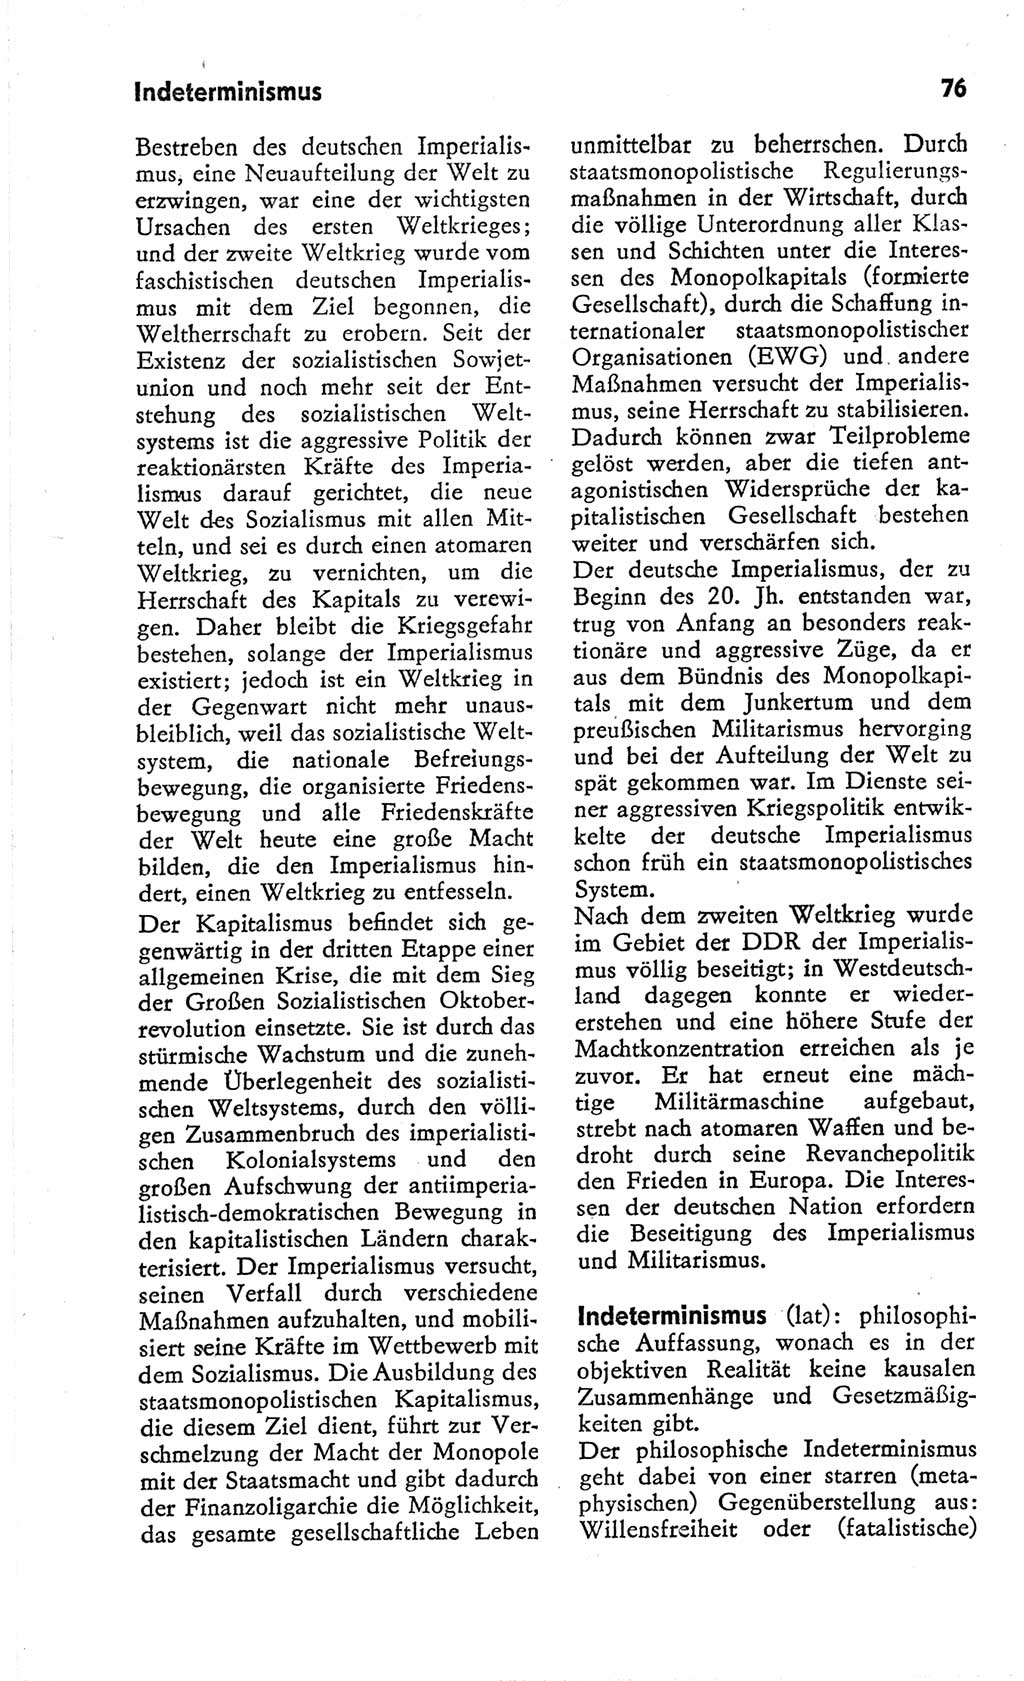 Kleines Wörterbuch der marxistisch-leninistischen Philosophie [Deutsche Demokratische Republik (DDR)] 1966, Seite 76 (Kl. Wb. ML Phil. DDR 1966, S. 76)